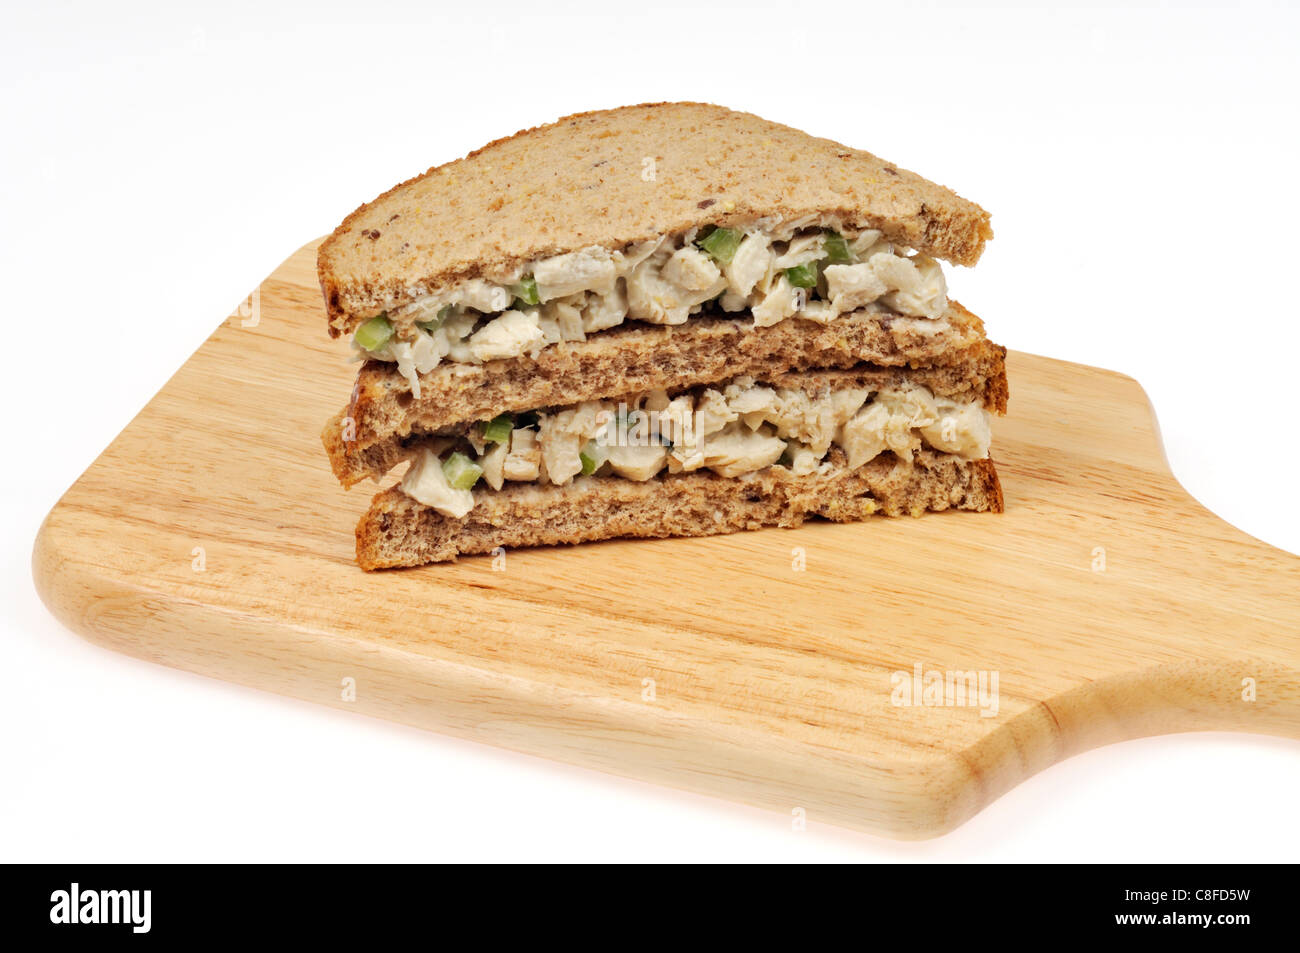 Salade de poulet sandwich sur pain complet empilés sur une planche à découper en bois sur fond blanc. Banque D'Images